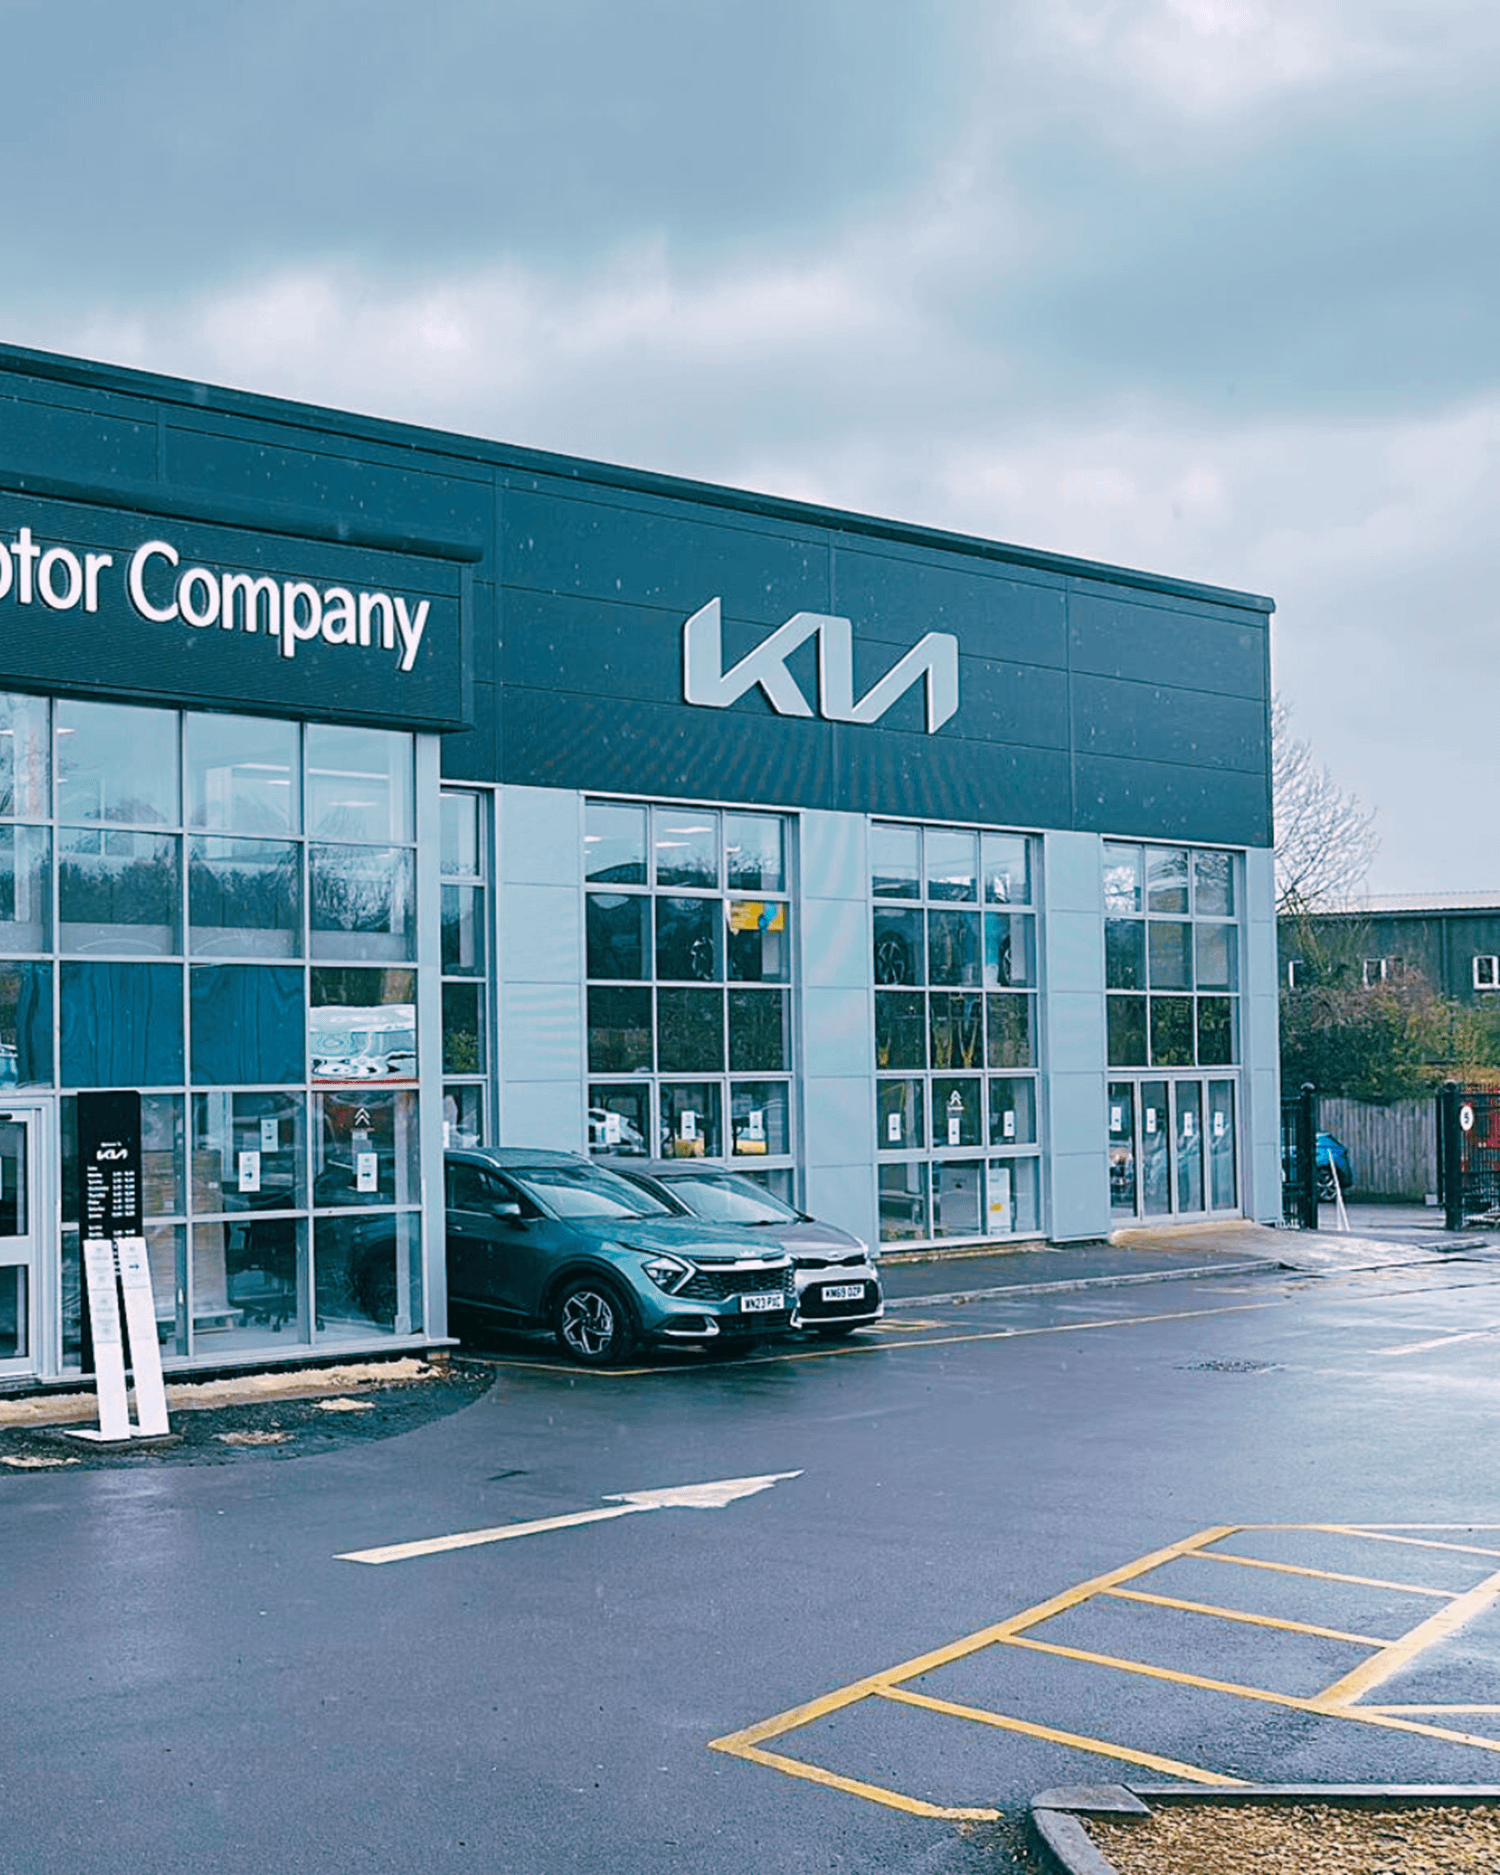 New illuminated Kia signs on the Chippenham Motor Company building